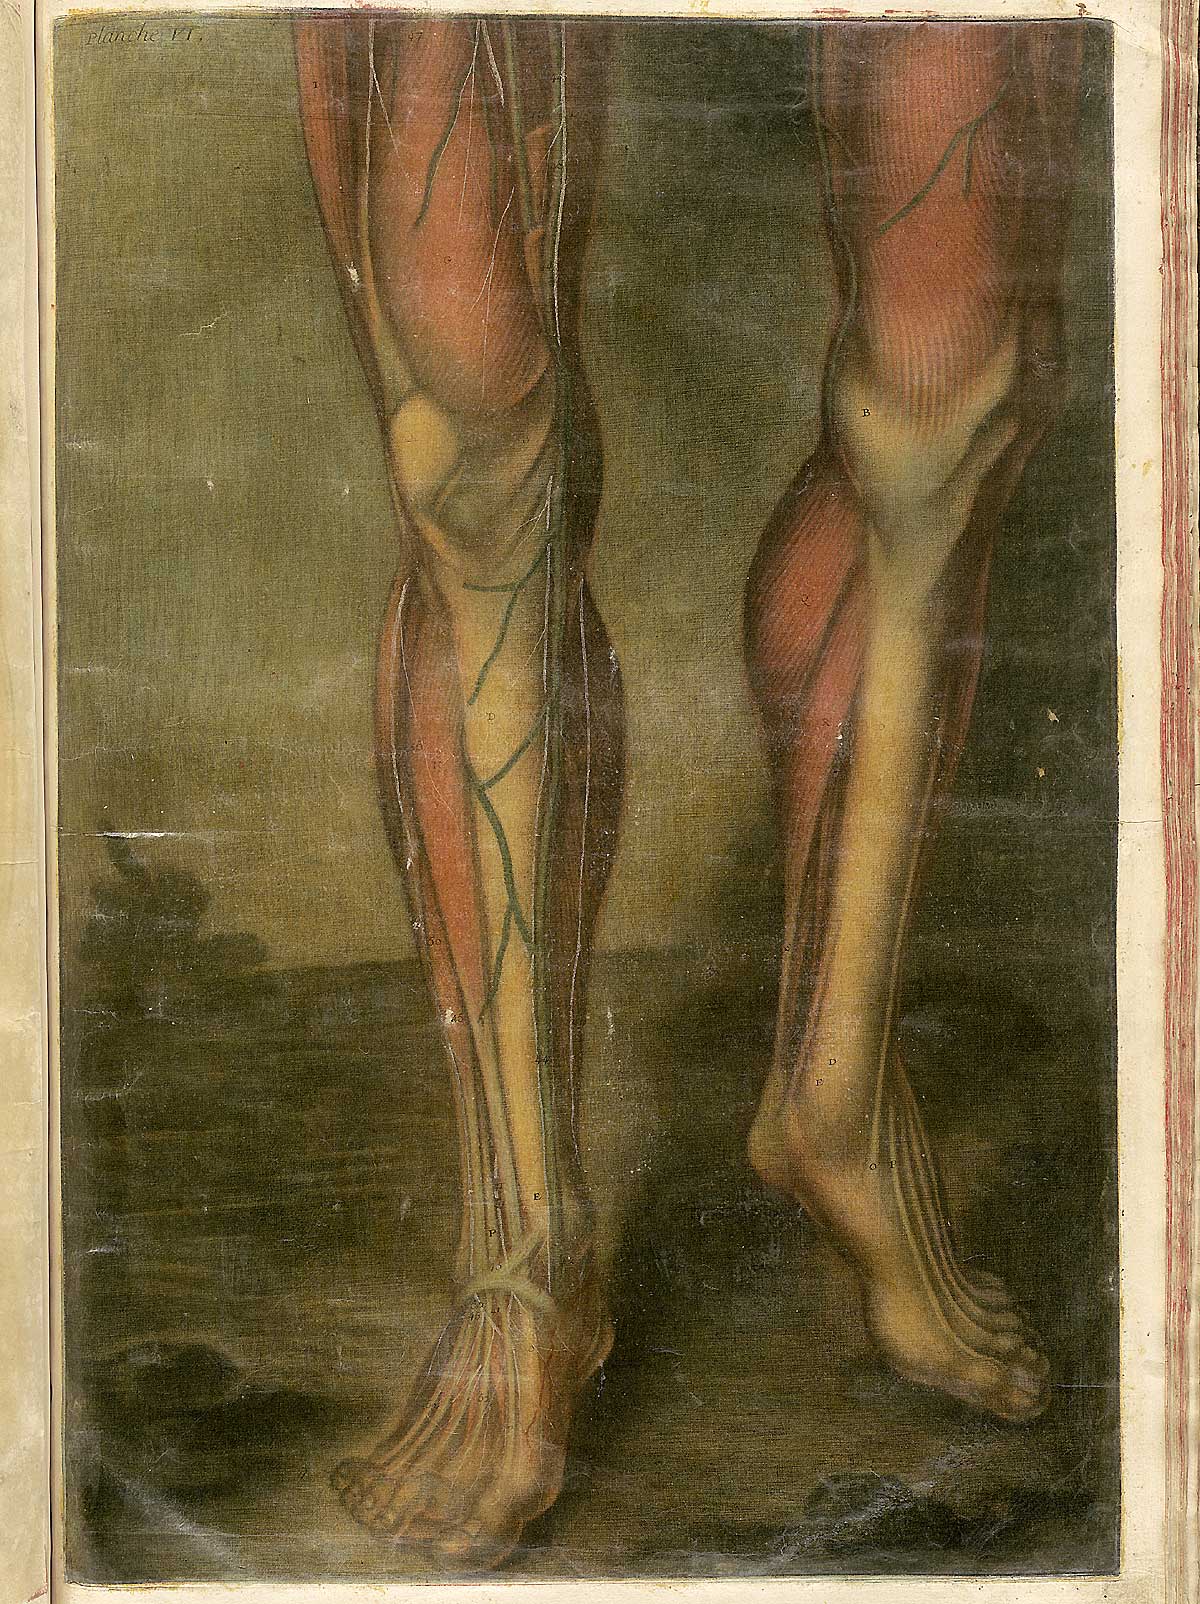 The legs; from Jacques Fabian Gautier d’Agoty’s Anatomie générale des viscères en situation, NLM Call no.: WZ 260 G283c 1745.